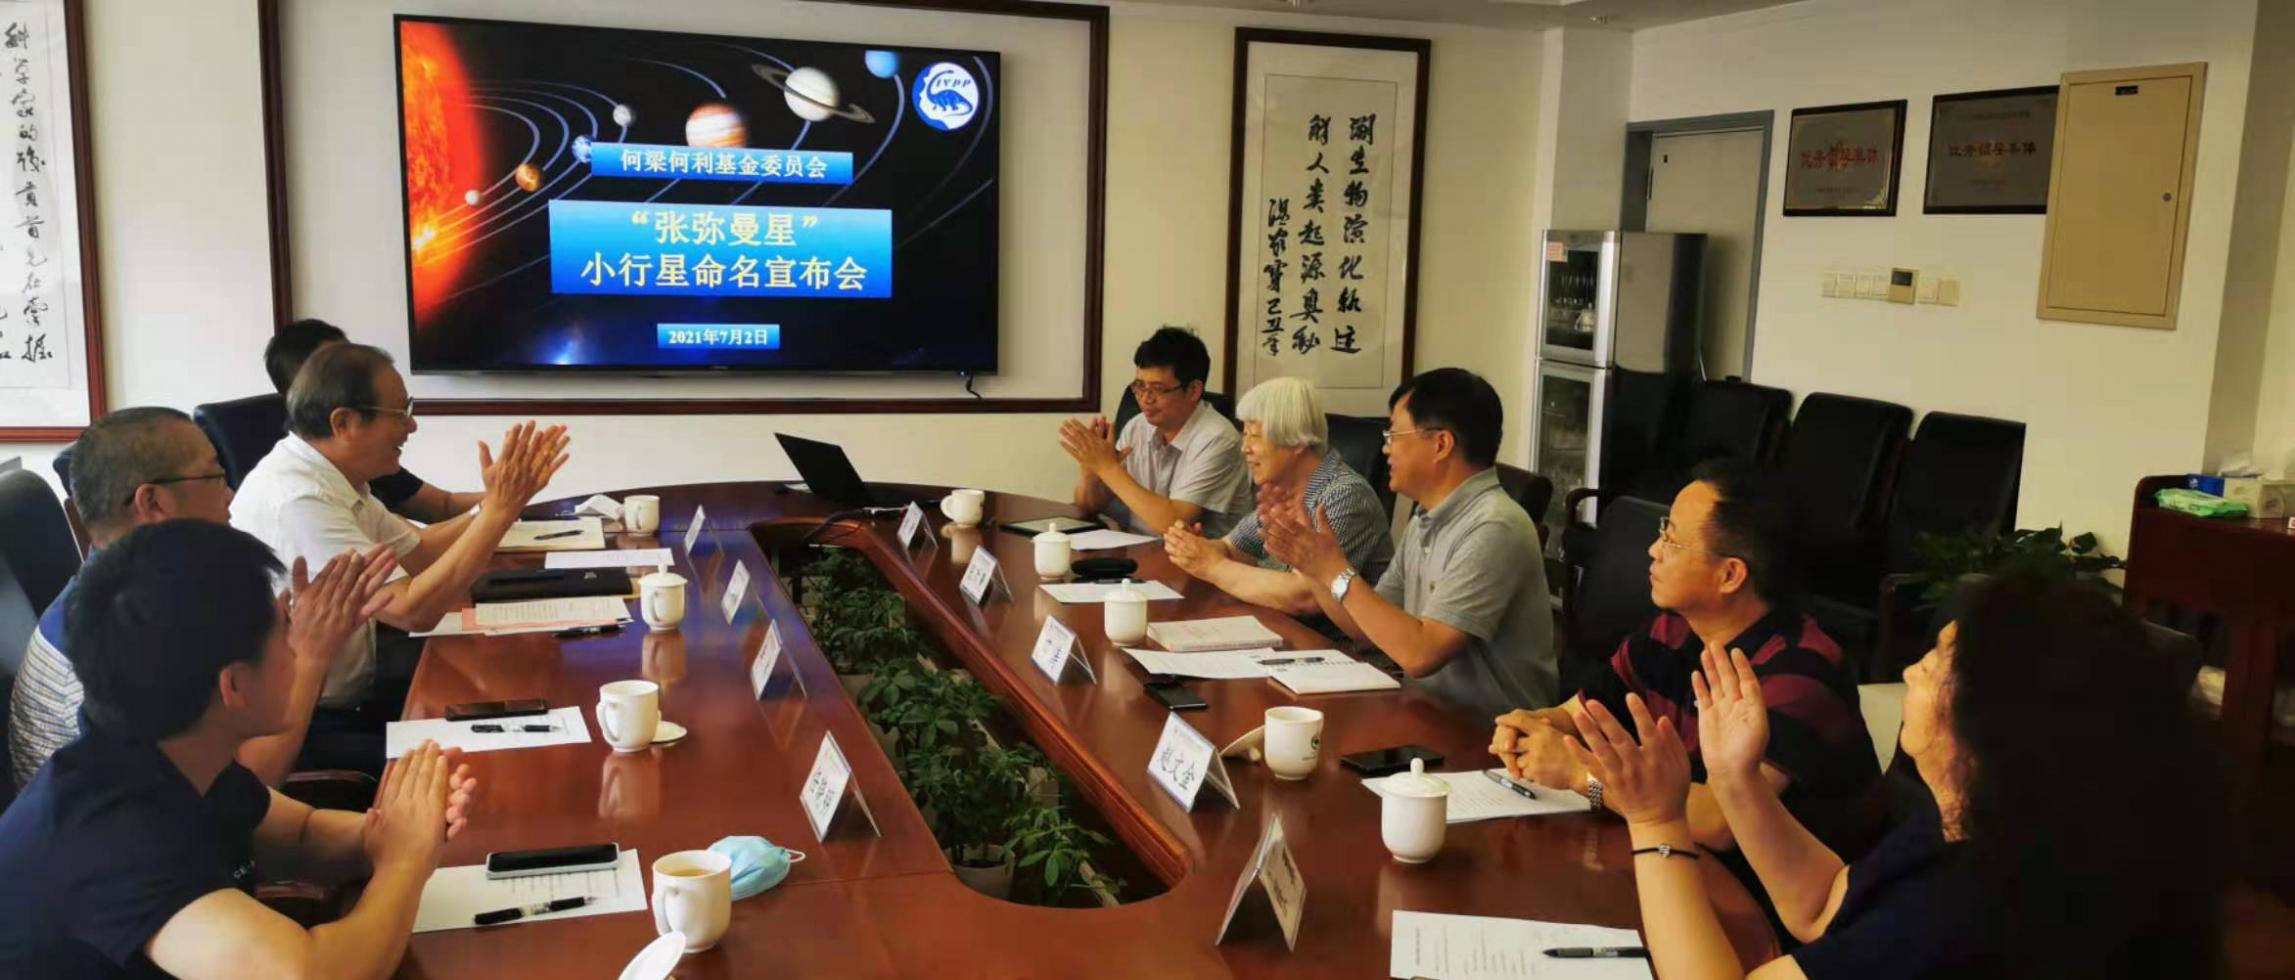 中国科学院紫金山天文台发现的国际编号为347336号小行星正式命名为“张弥曼星”